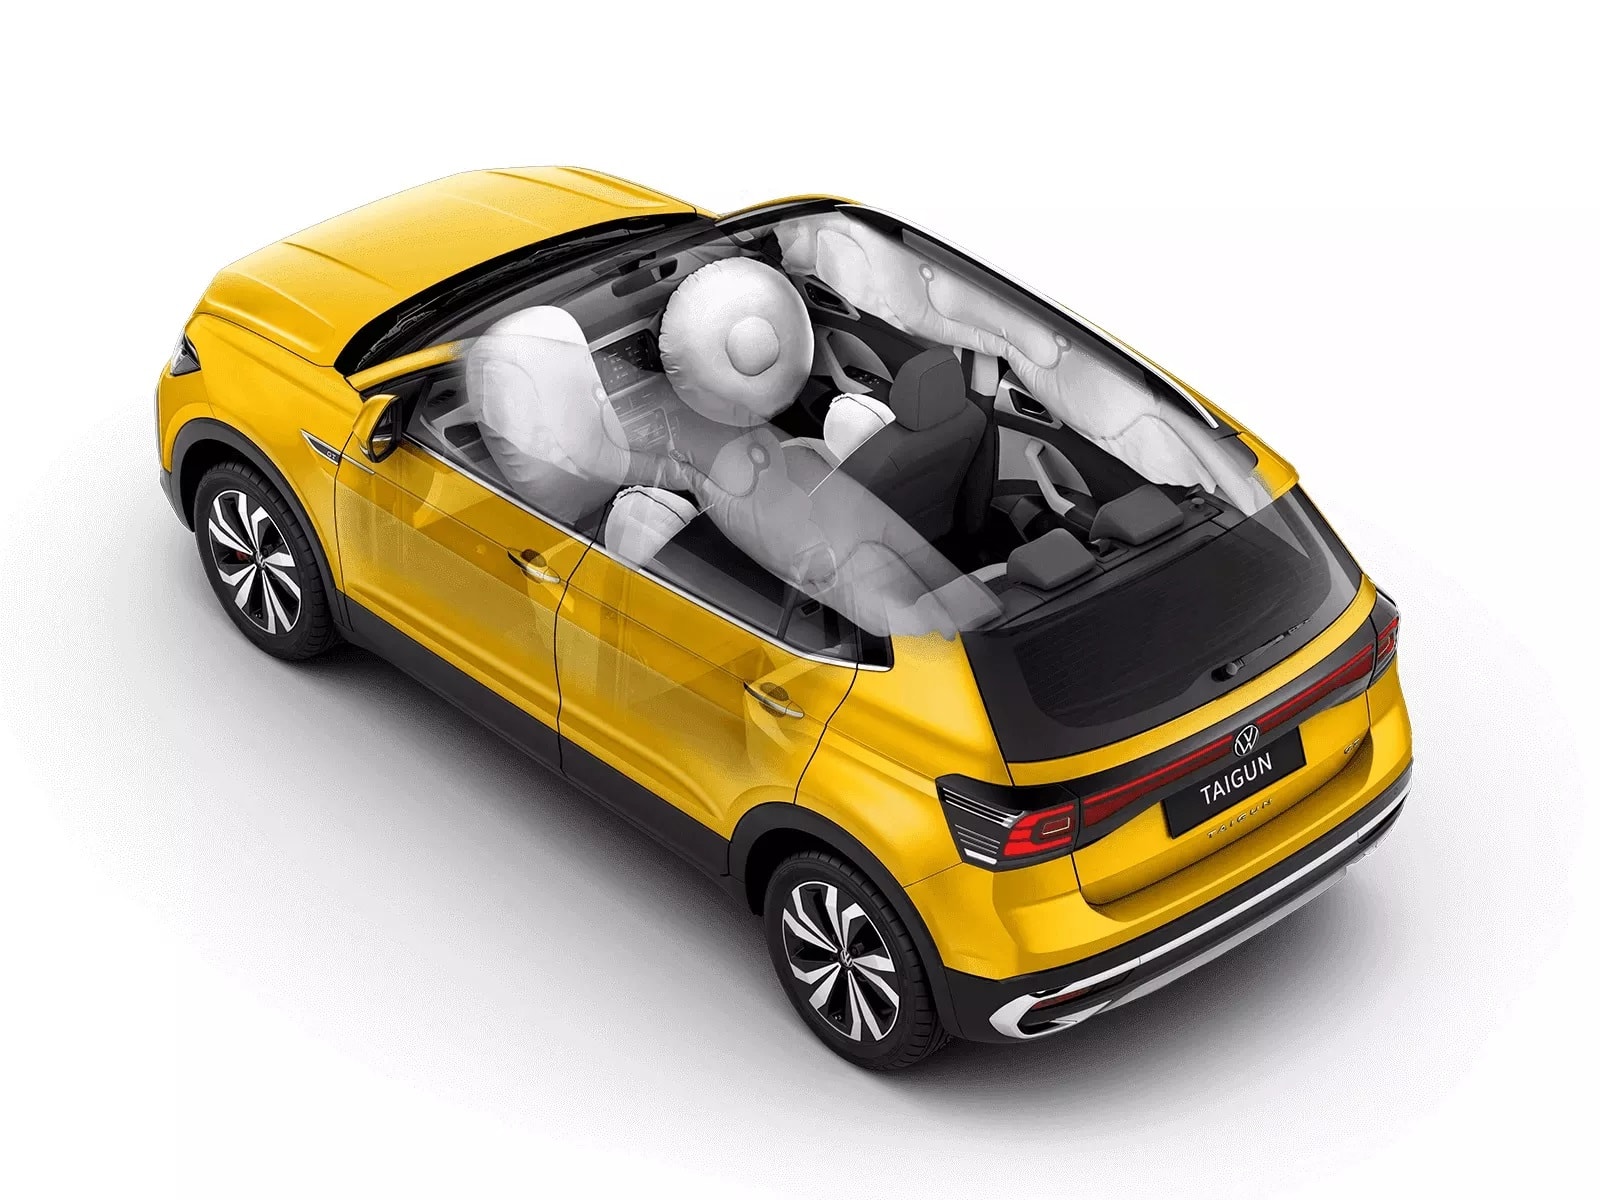 Volkswagen Taigun SUV Special Edition: Safety